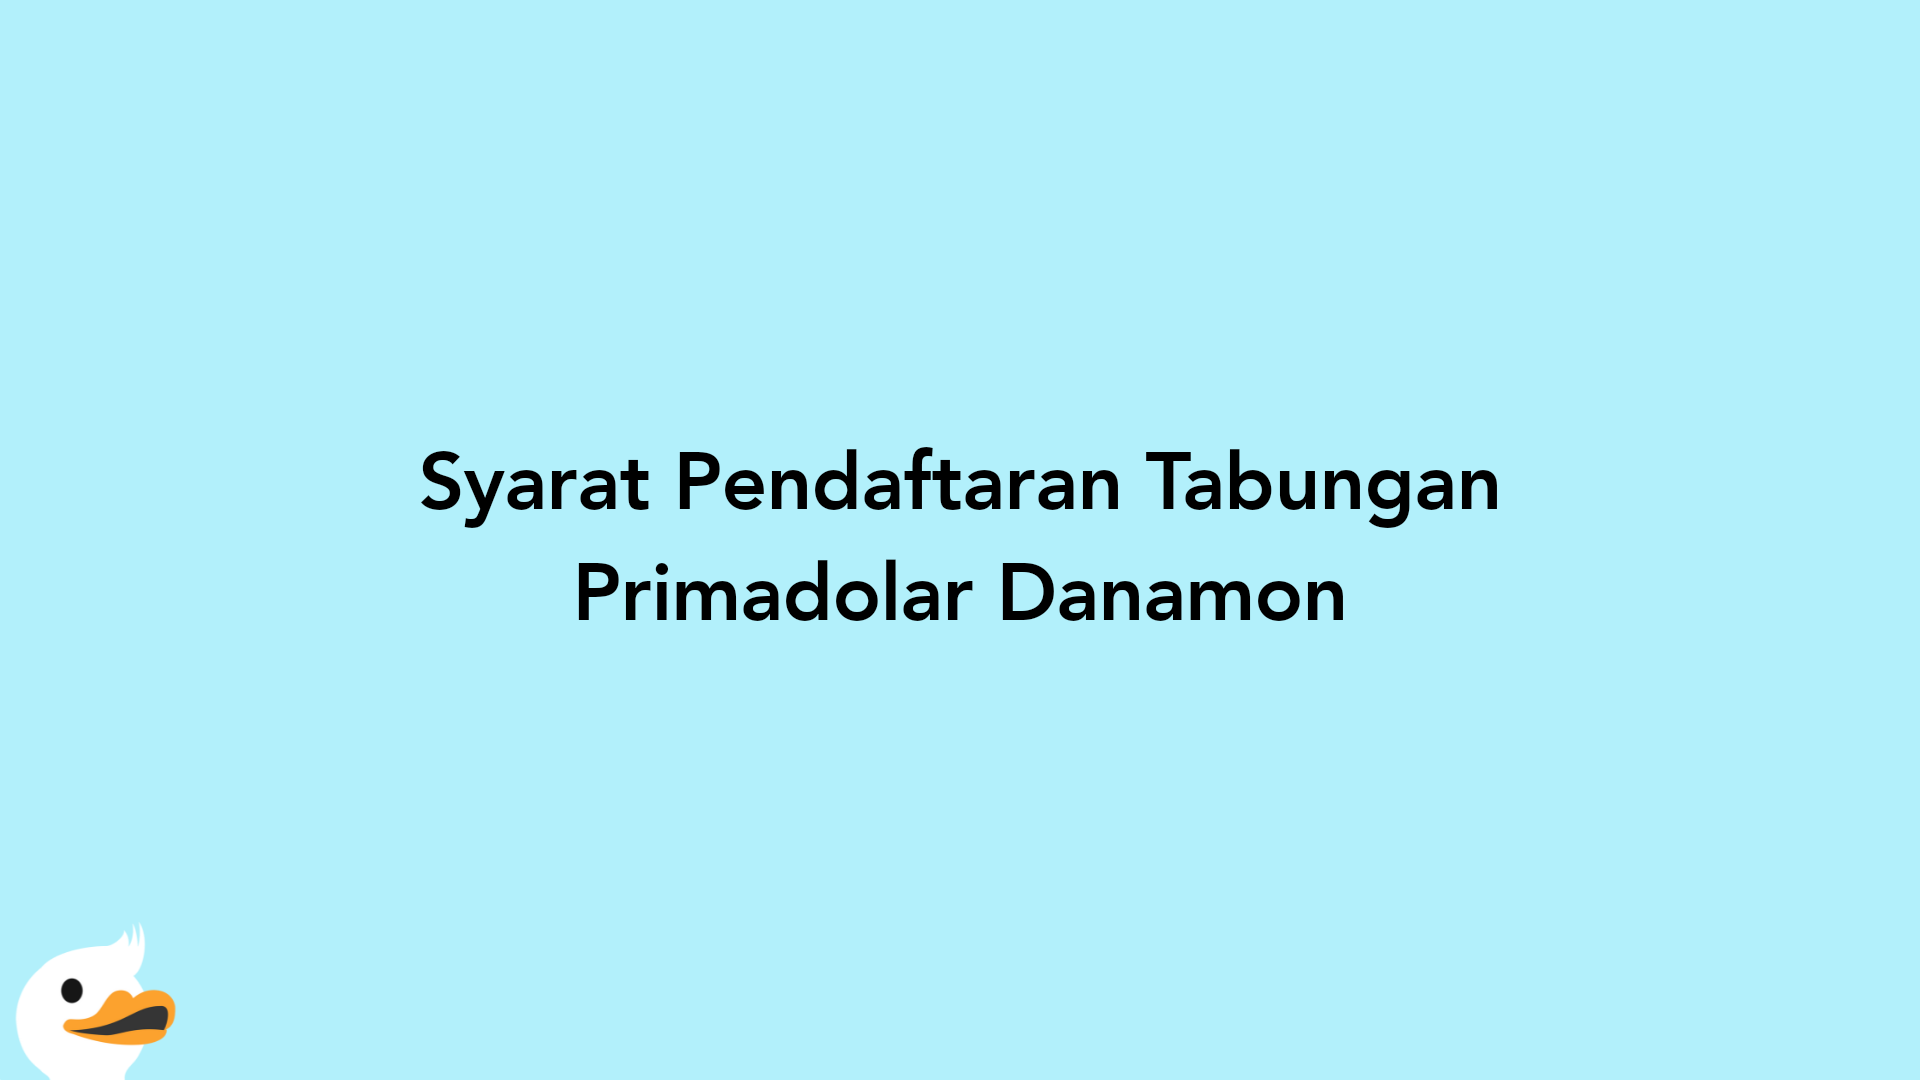 Syarat Pendaftaran Tabungan Primadolar Danamon